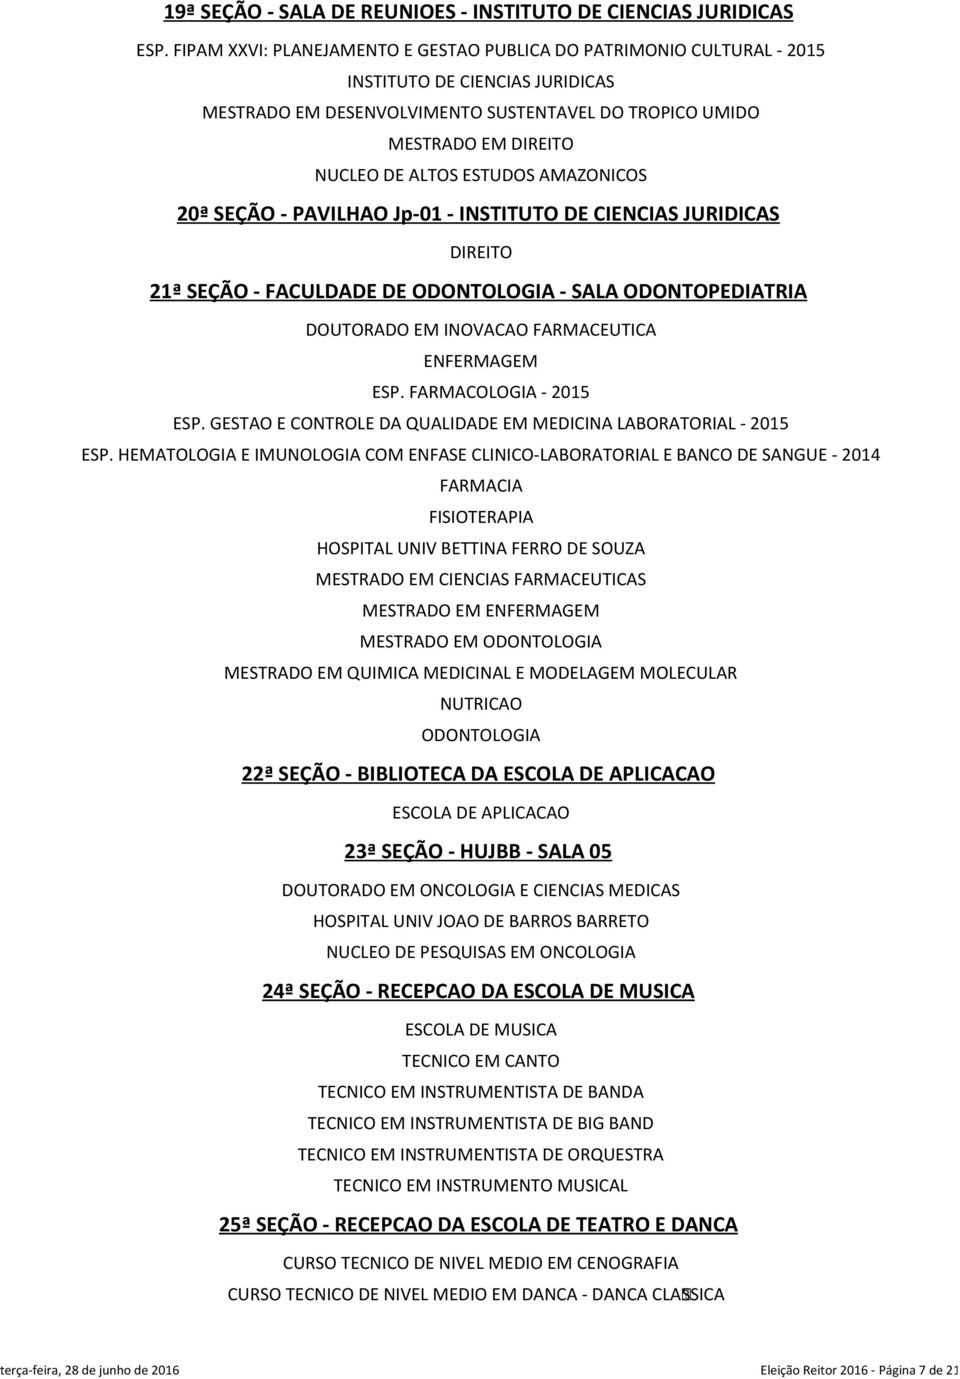 ESTUDOS AMAZONICOS 20ª SEÇÃO - PAVILHAO Jp-01 - INSTITUTO DE CIENCIAS JURIDICAS DIREITO 21ª SEÇÃO - FACULDADE DE ODONTOLOGIA - SALA ODONTOPEDIATRIA DOUTORADO EM INOVACAO FARMACEUTICA ENFERMAGEM ESP.